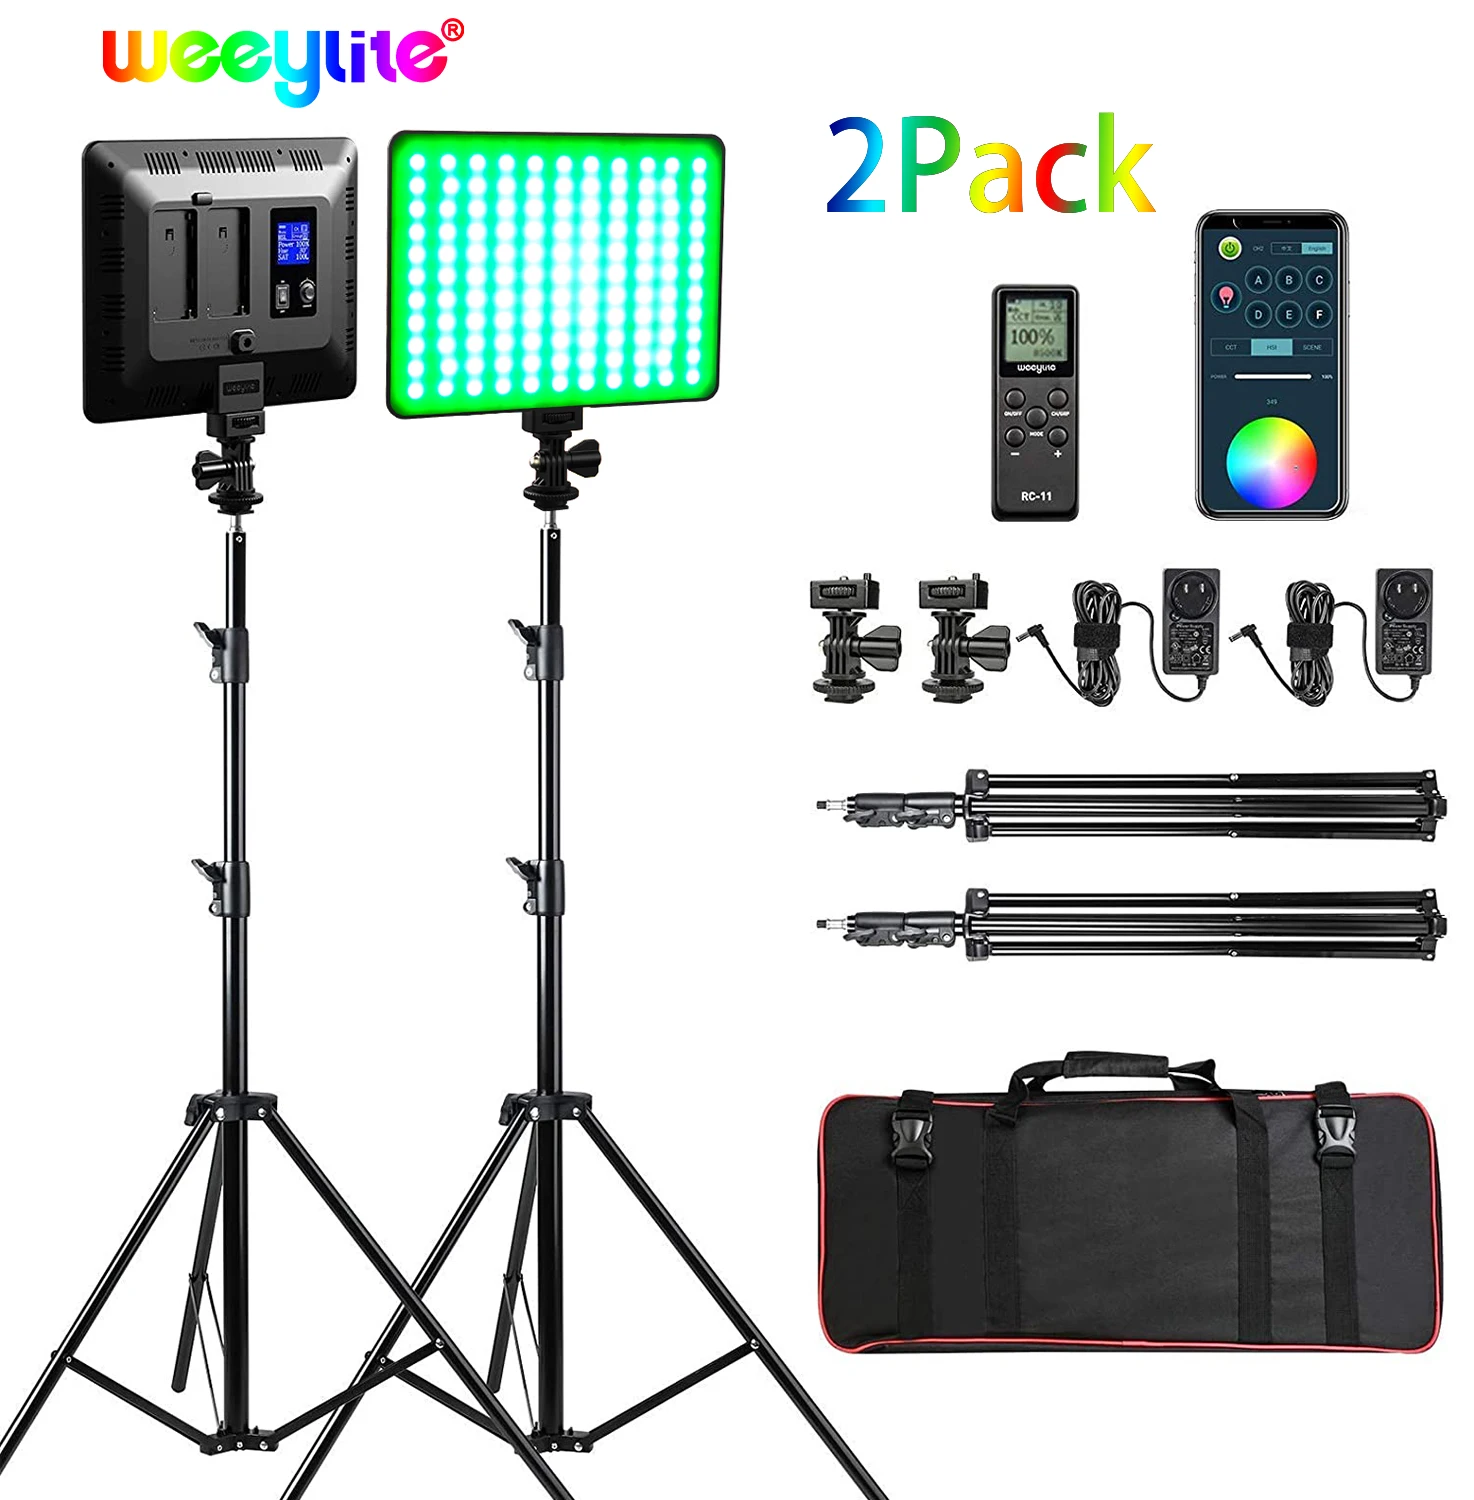 

Weeylite RGB светодиодная подсветка для видеосъемки с приложением/пультом дистанционного управления, 2 упаковки, подсветка для фотосъемки, полны...